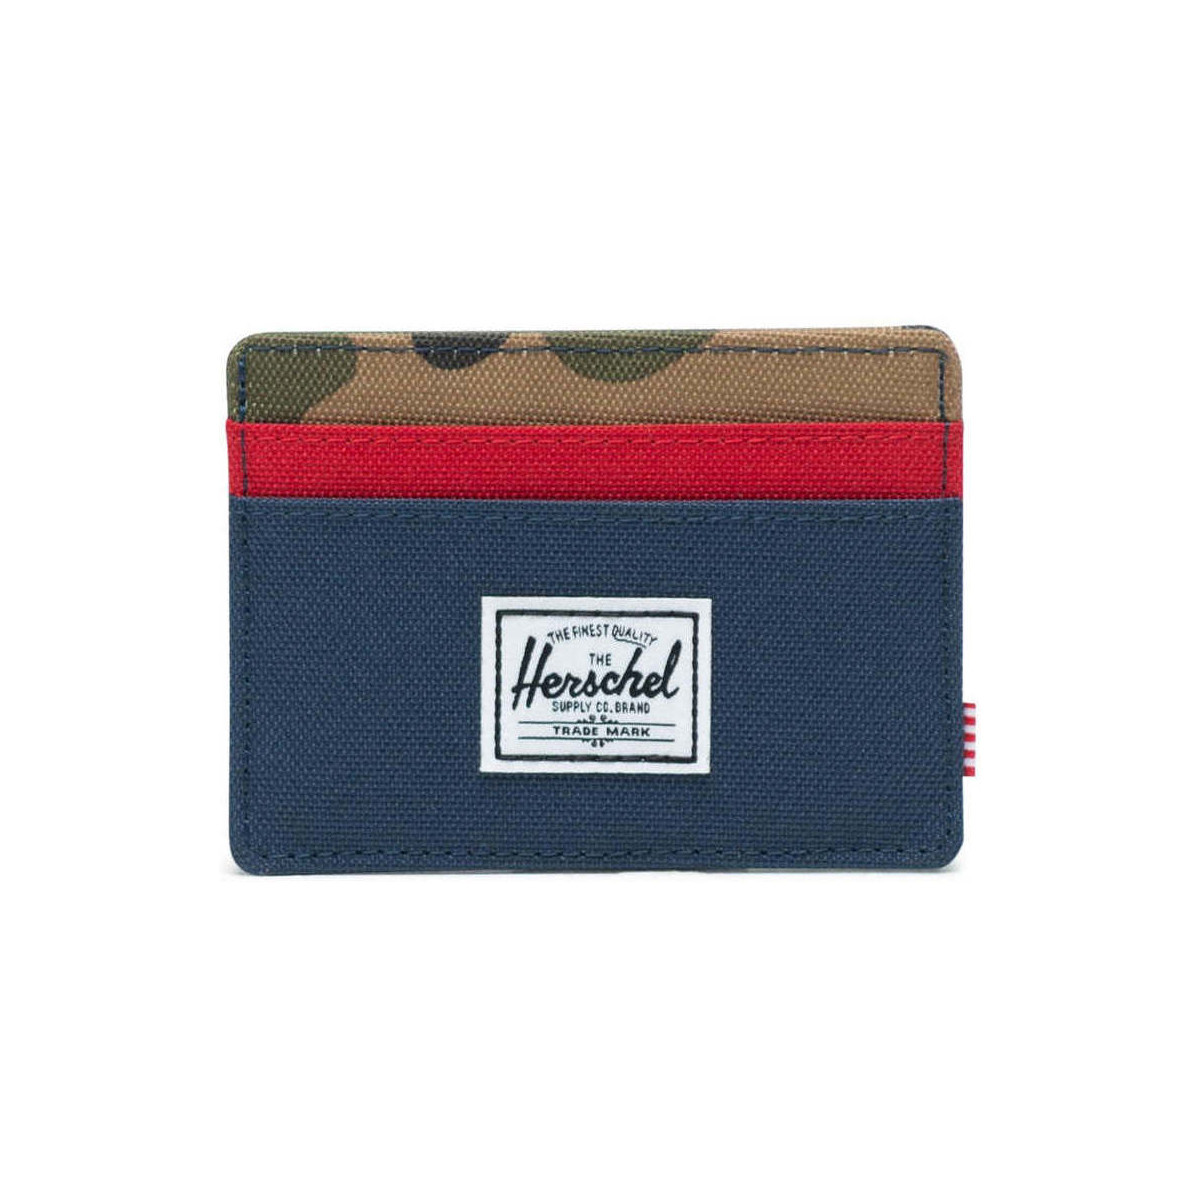 Taschen Portemonnaie Herschel Charlie RFID Woodland Camo Navy Red Multicolor